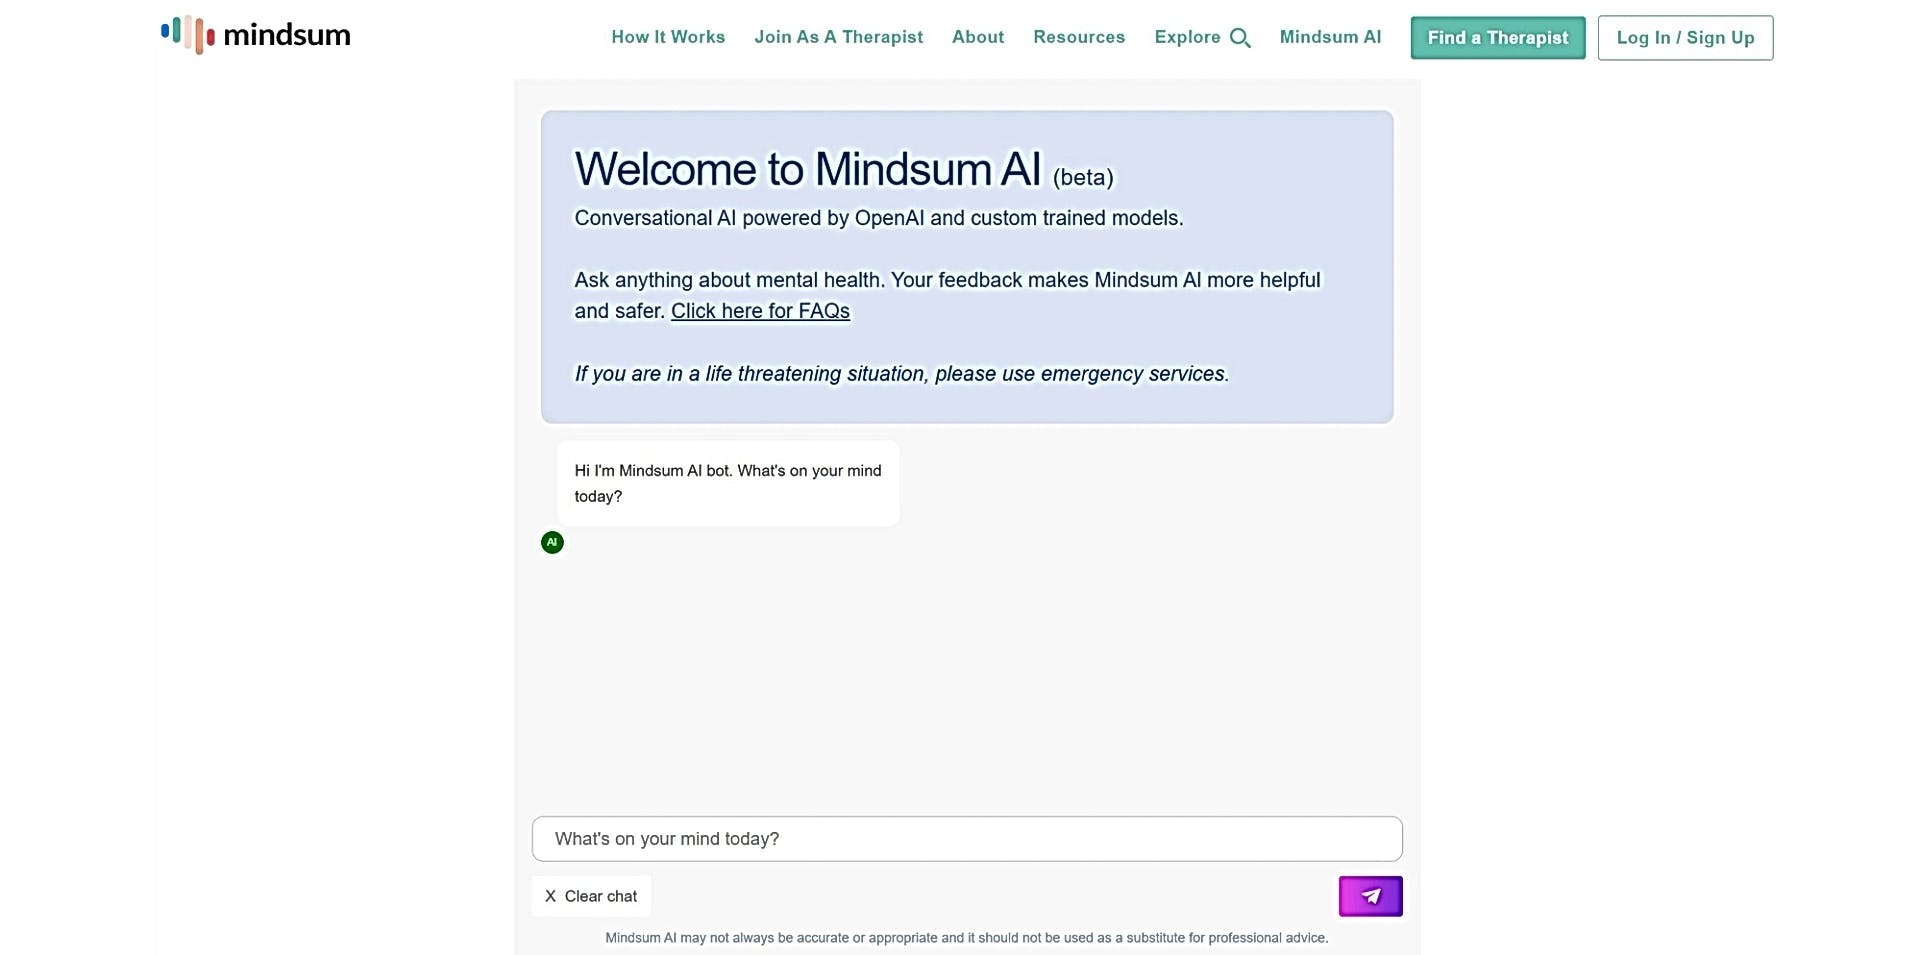 Mindsum AI featured